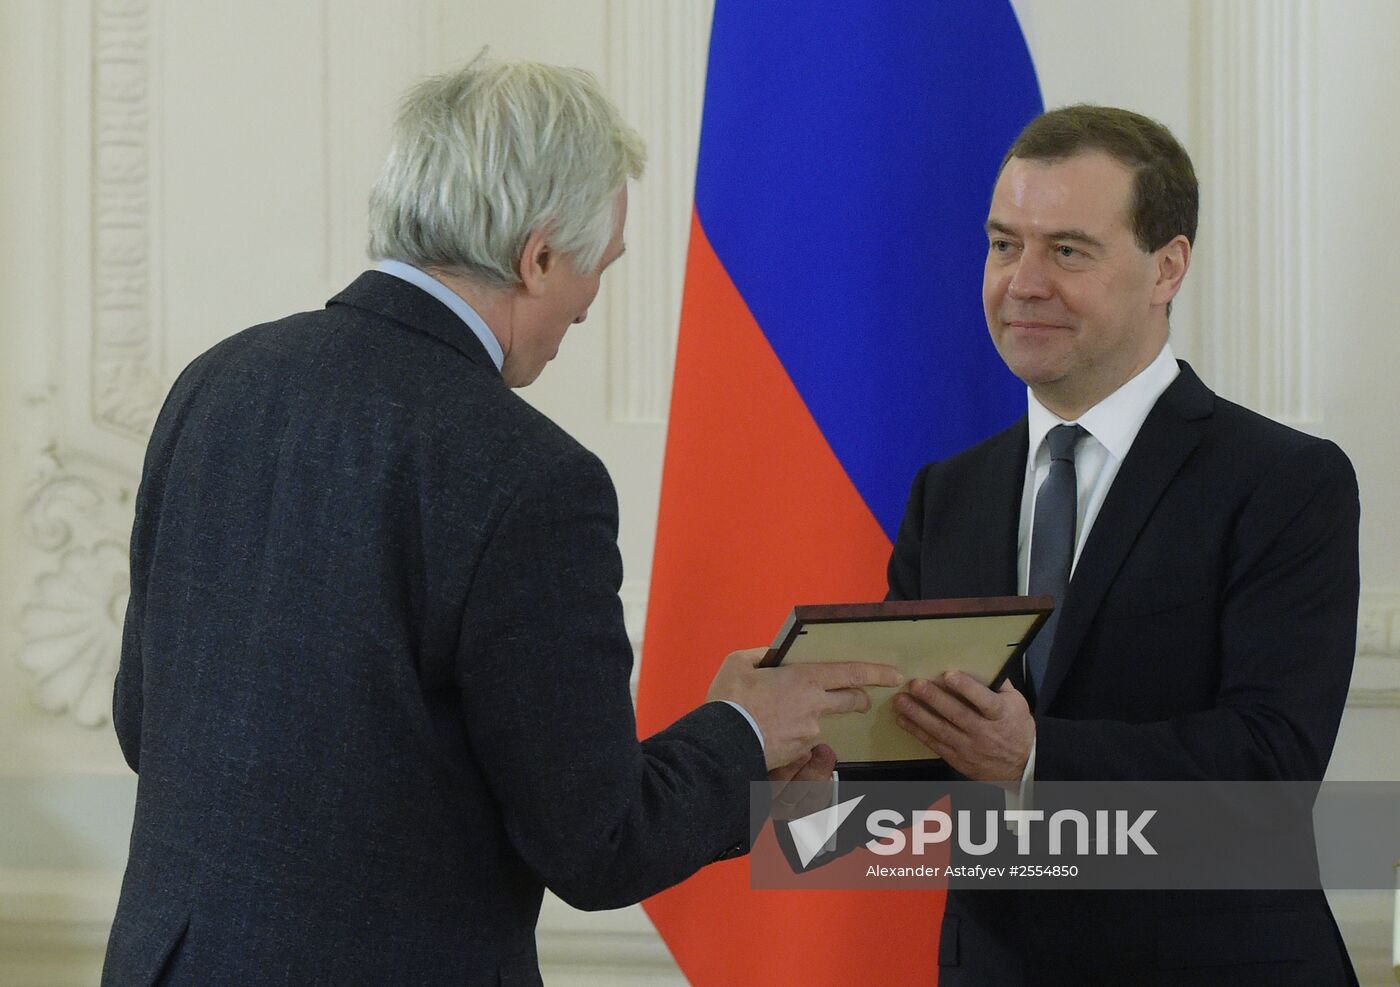 Prime Minister Dmitry Medvedev gives mass media awards for 2014